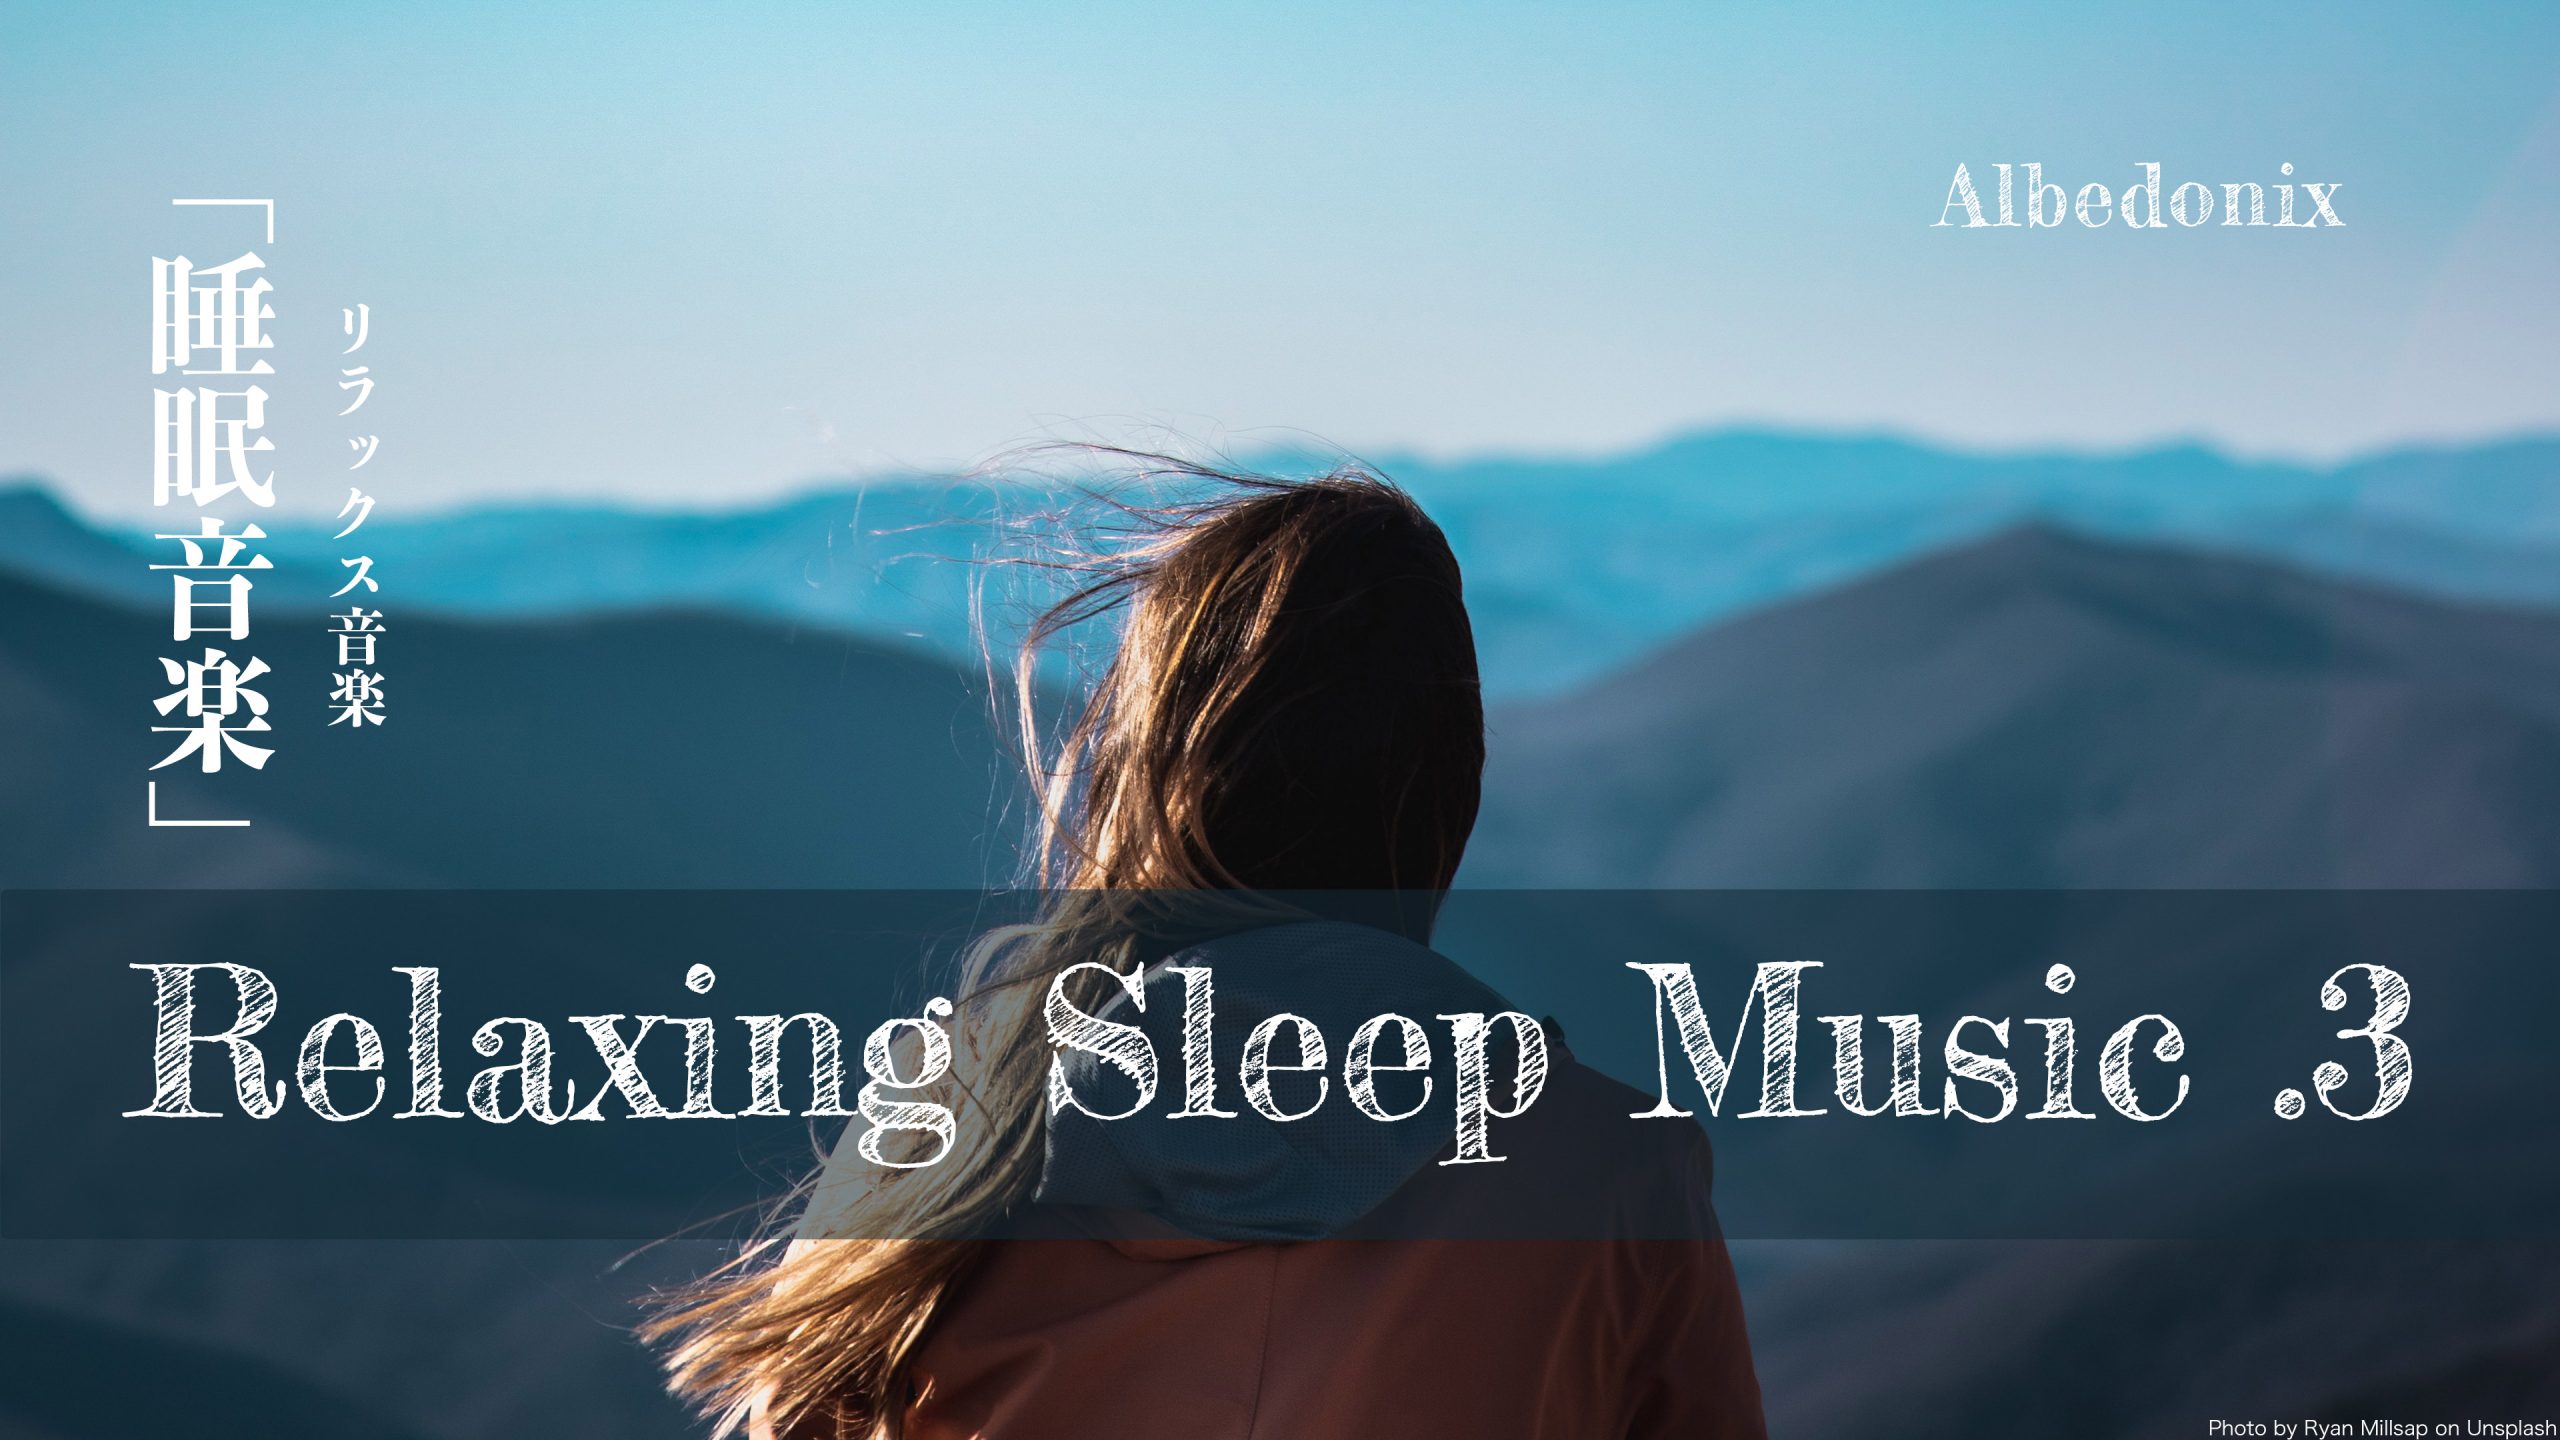 【睡眠 .3】#Relaxing #Sleep #Music #リラックス音楽 #睡眠導入 #ヒーリング音楽 @Albedonix #アルベドニクス #YouTube #DeepSleep #Rain #Meditation #StressRelief #StudyMusic #JAPAN #TOKYO